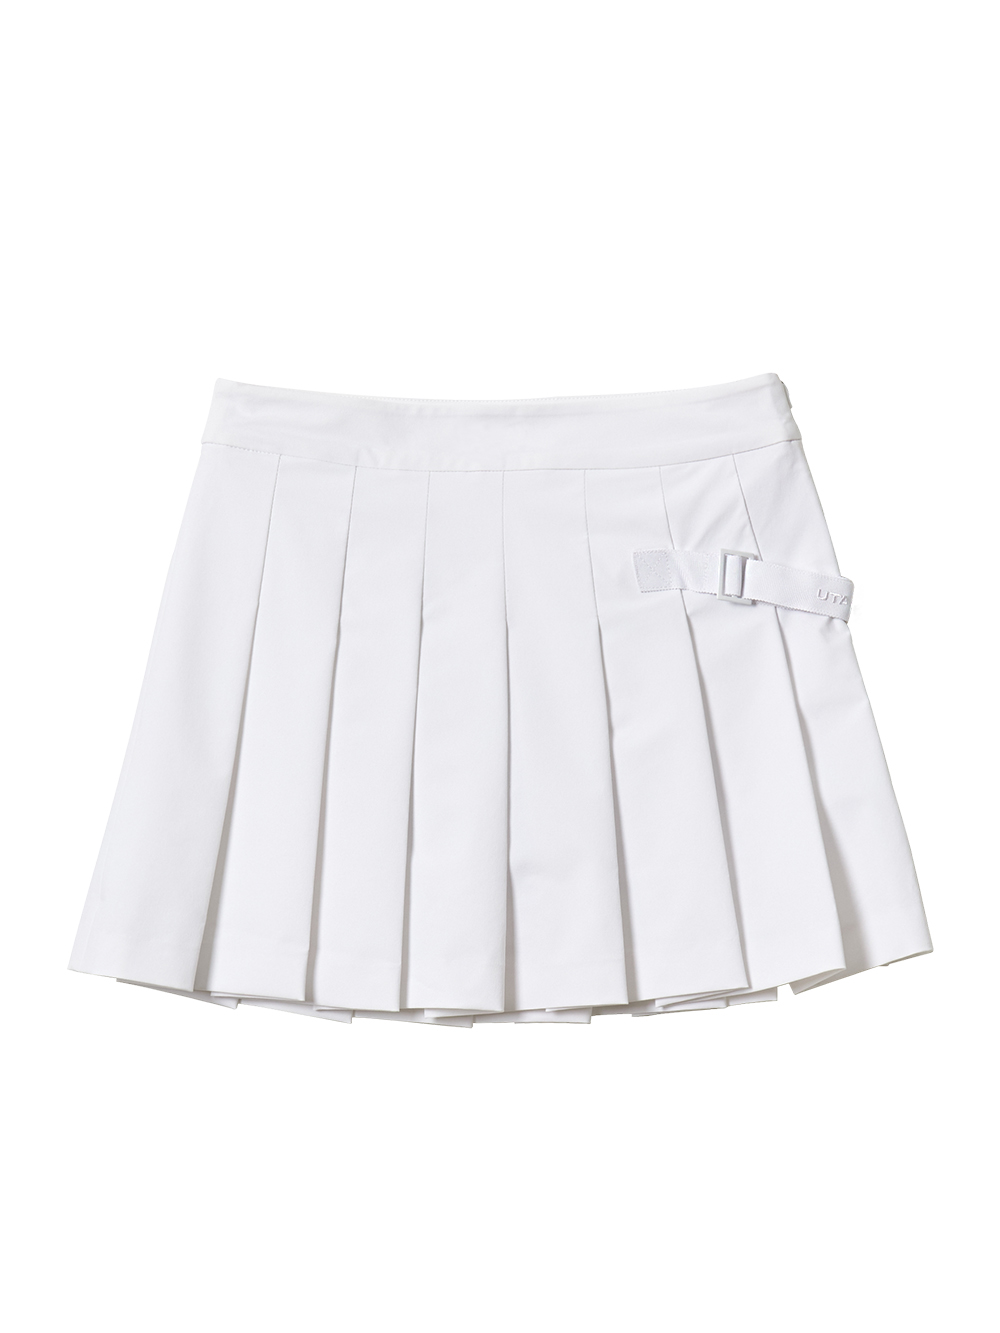 UTAA Bizo Strap Skirt : White (UA2SKF601WH)